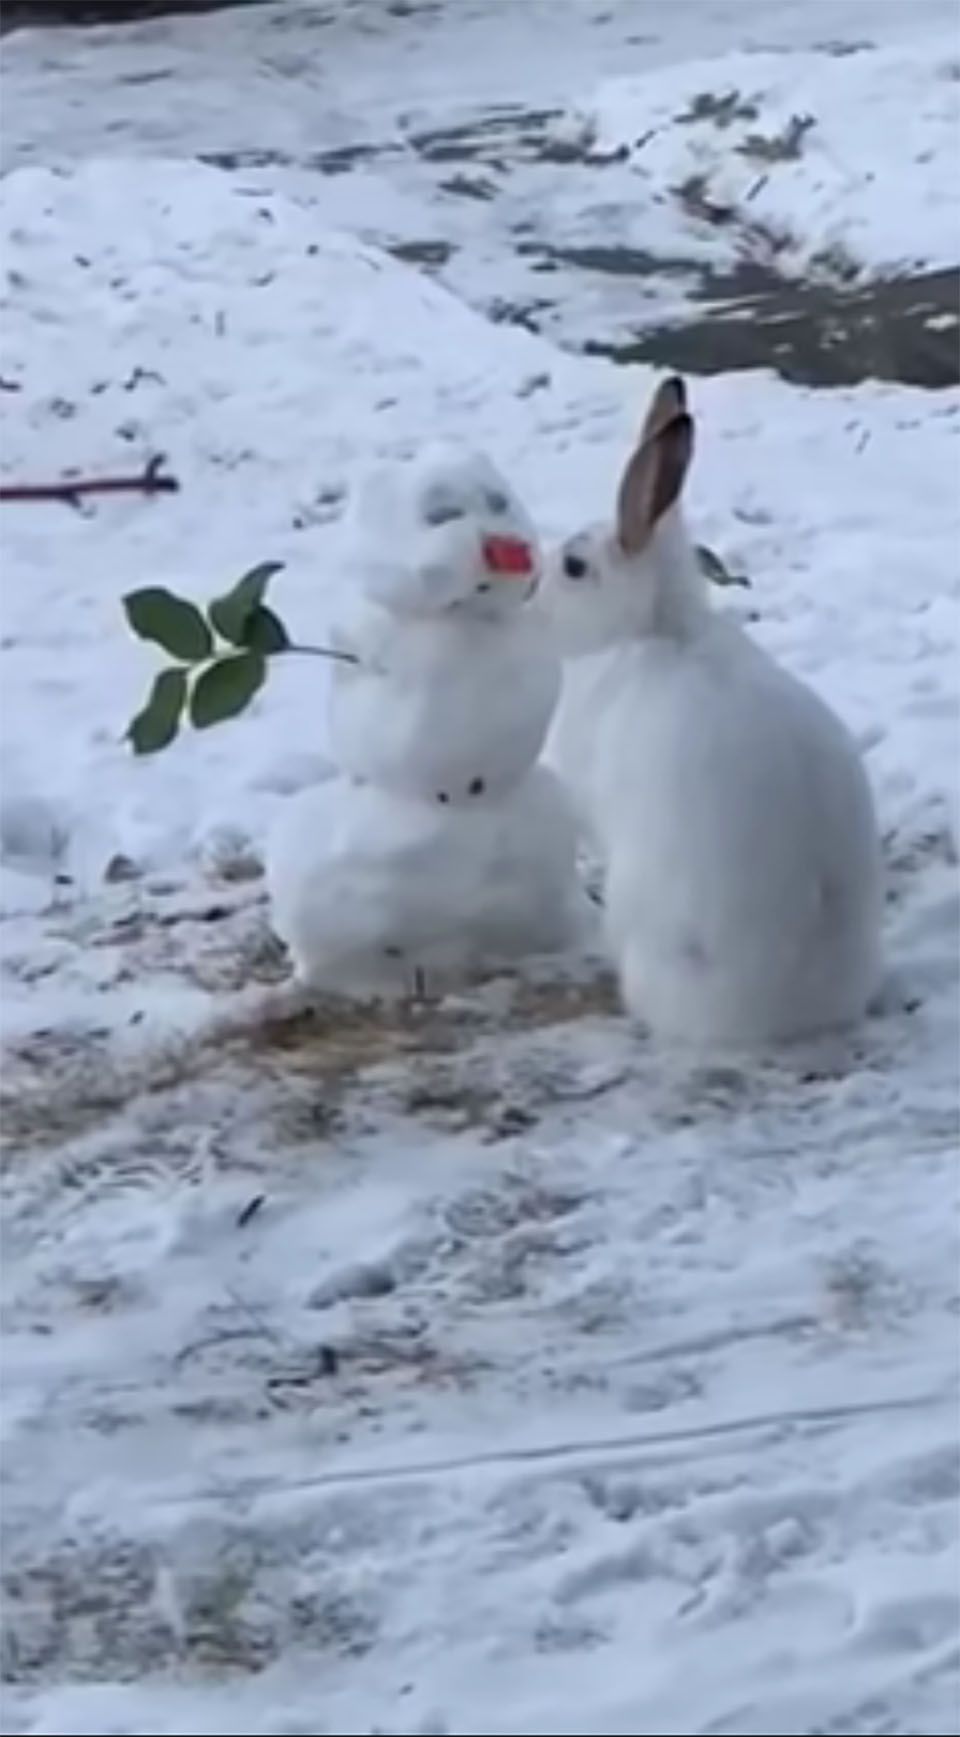 Conejito roba nariz de muñeco de nieve